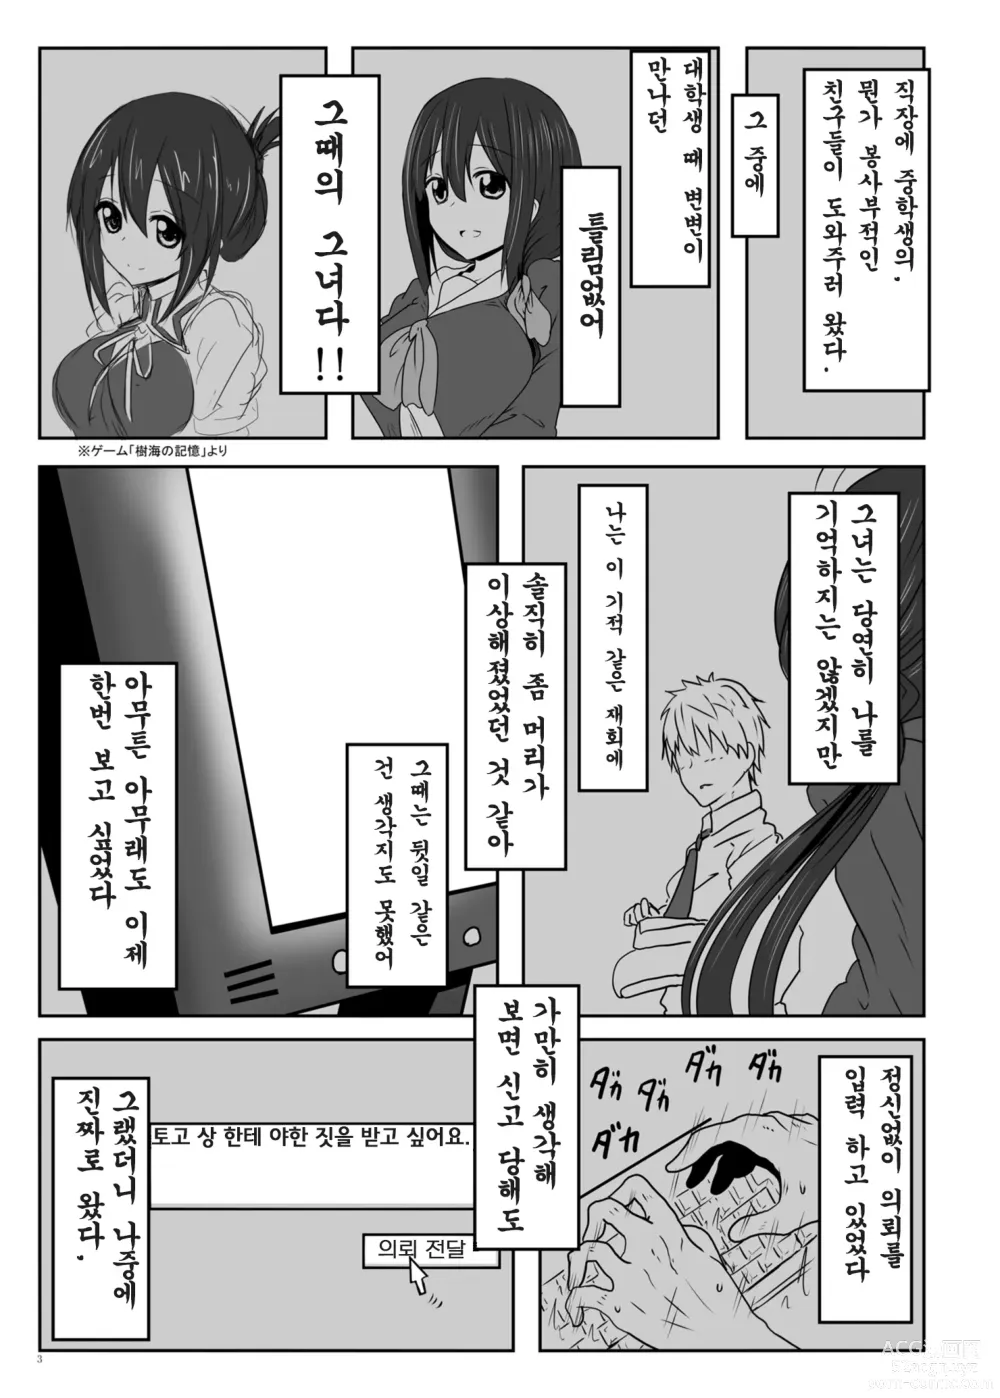 Page 4 of doujinshi Tougoux